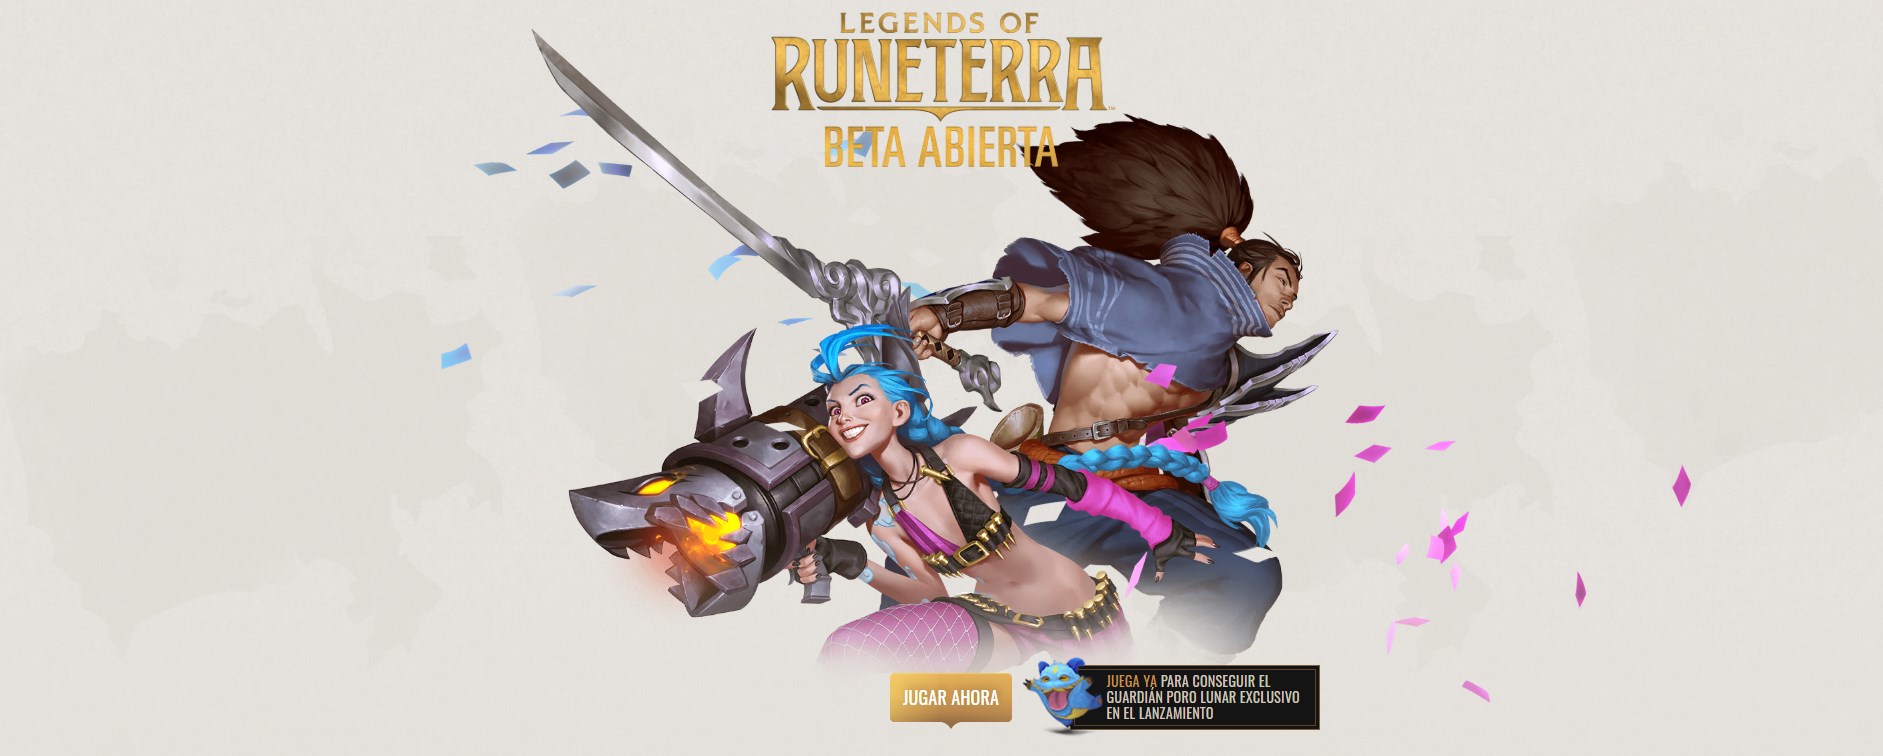 Anda sekarang dapat memainkan Legends of Runeterra di PC Anda: game yang akan menyapu Android